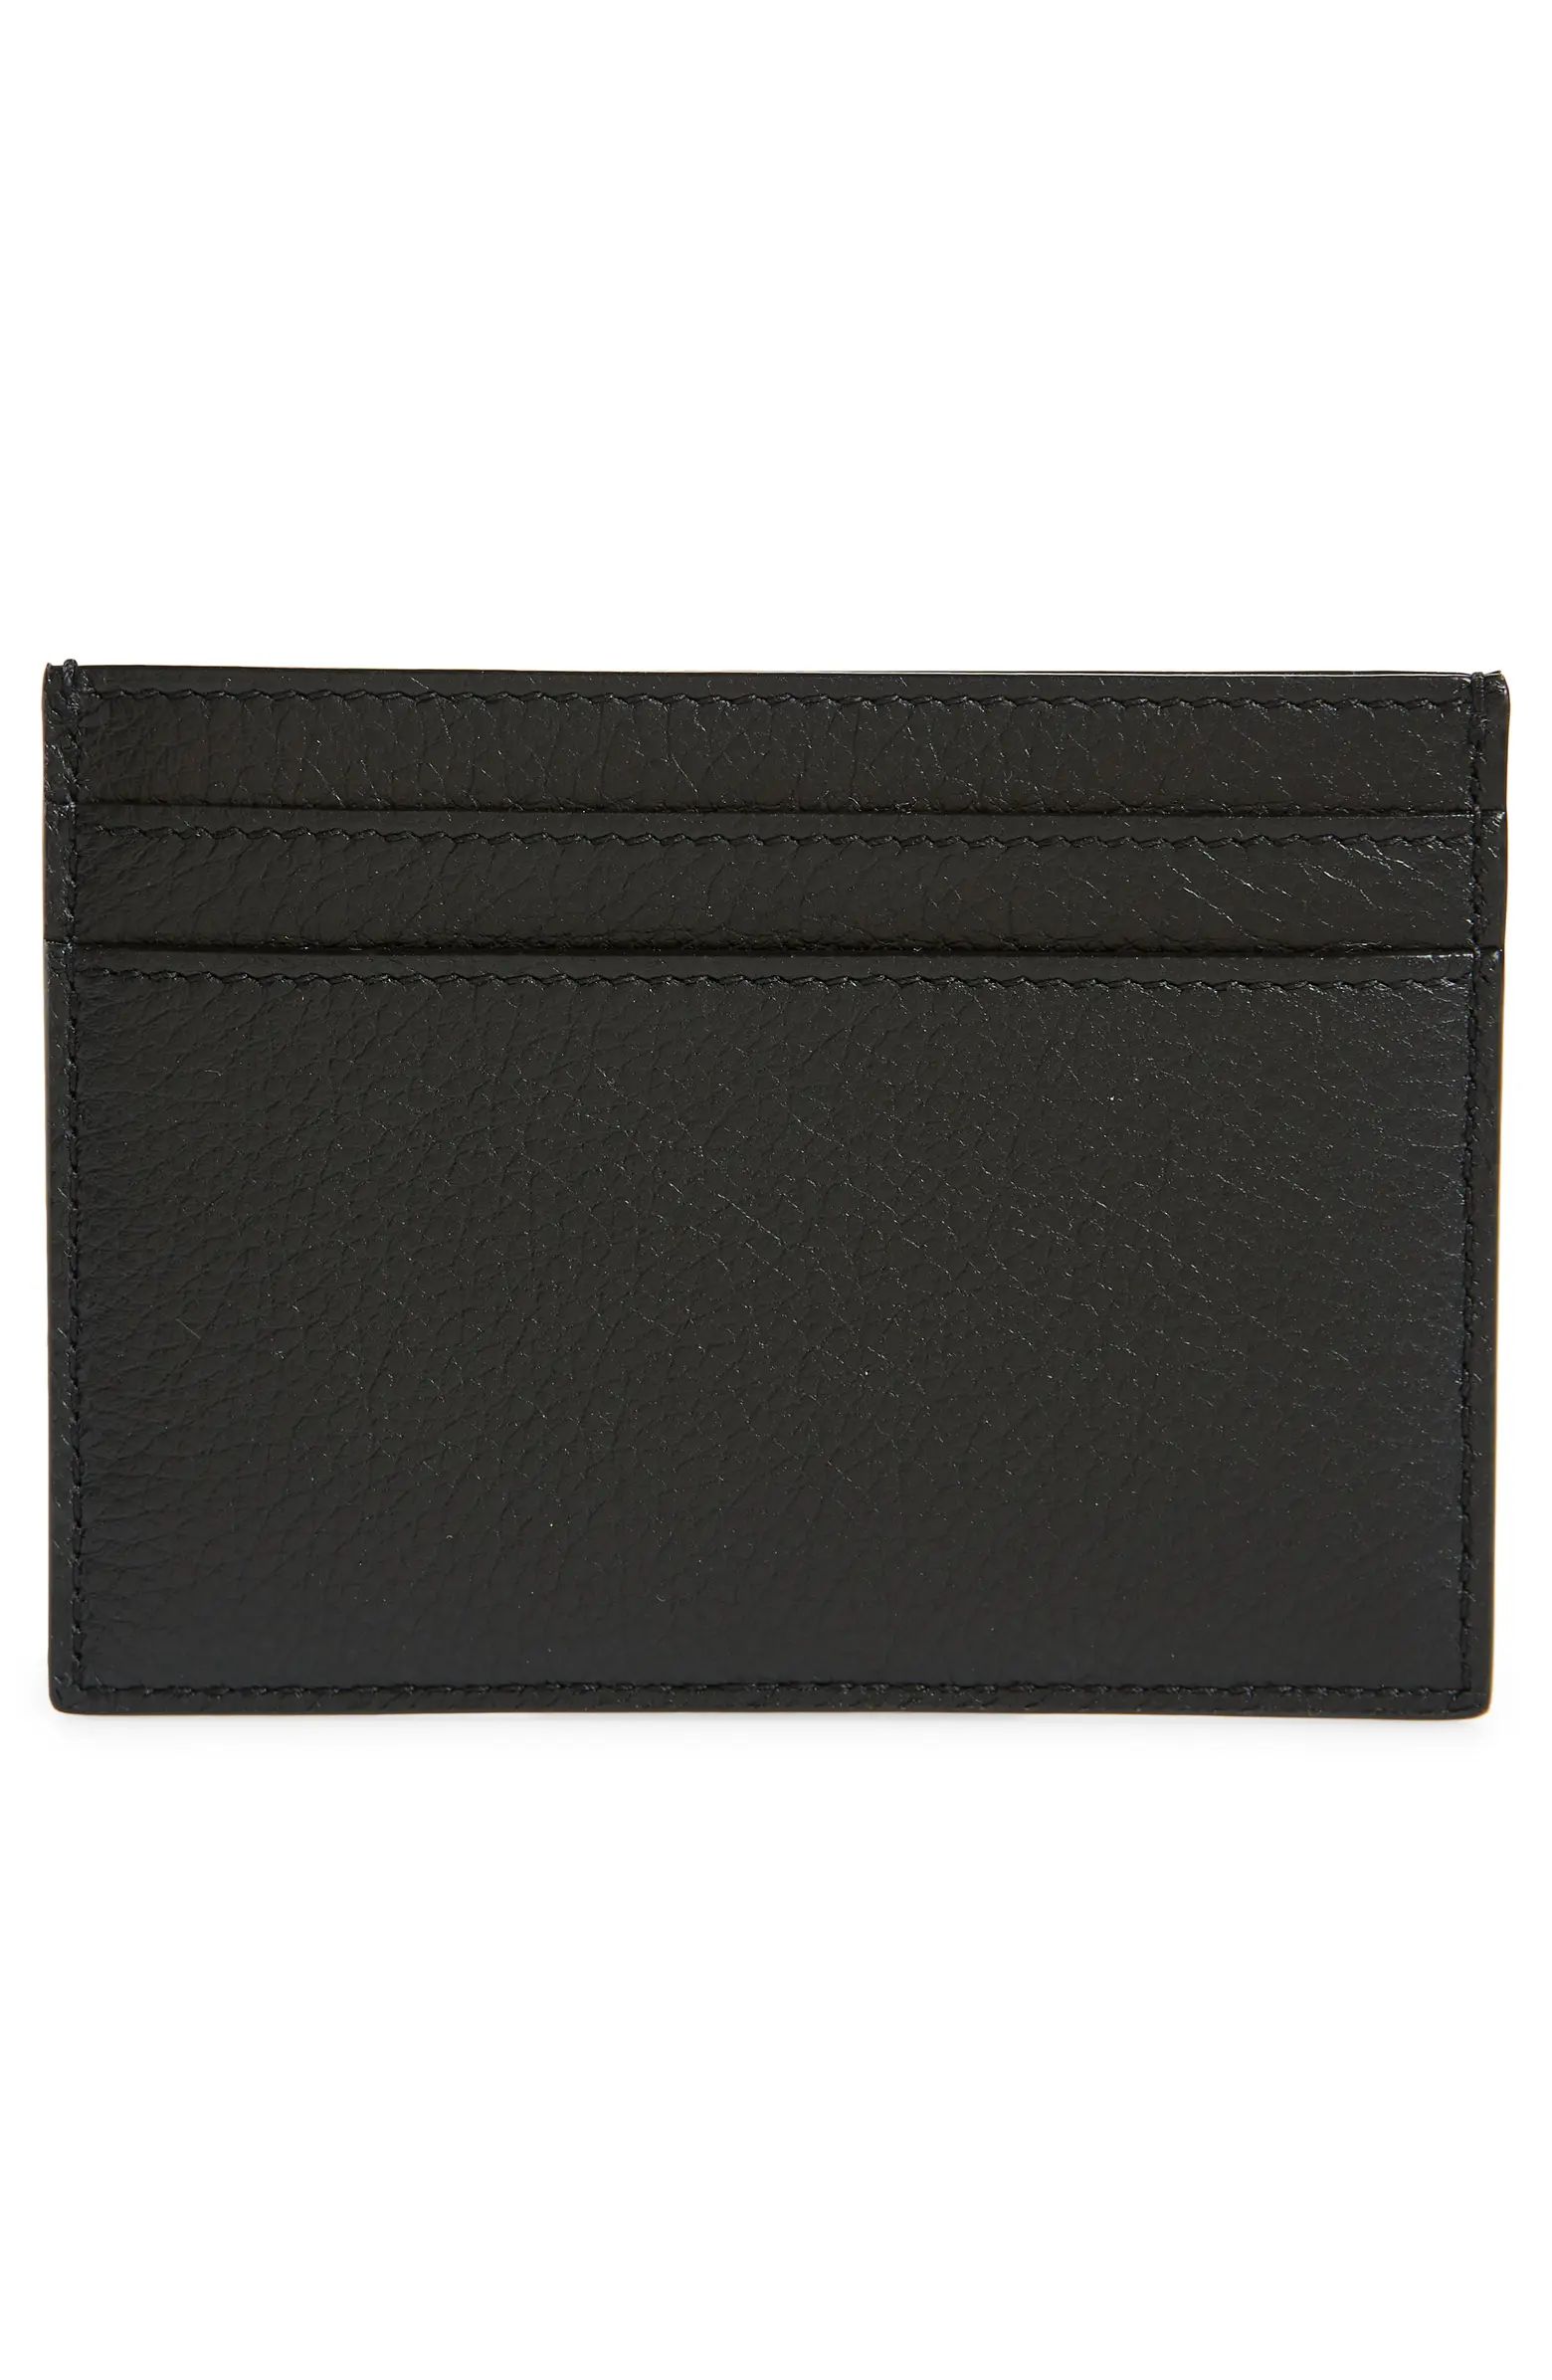 Saint Laurent Monogram Leather Card Case | Nordstrom | Nordstrom